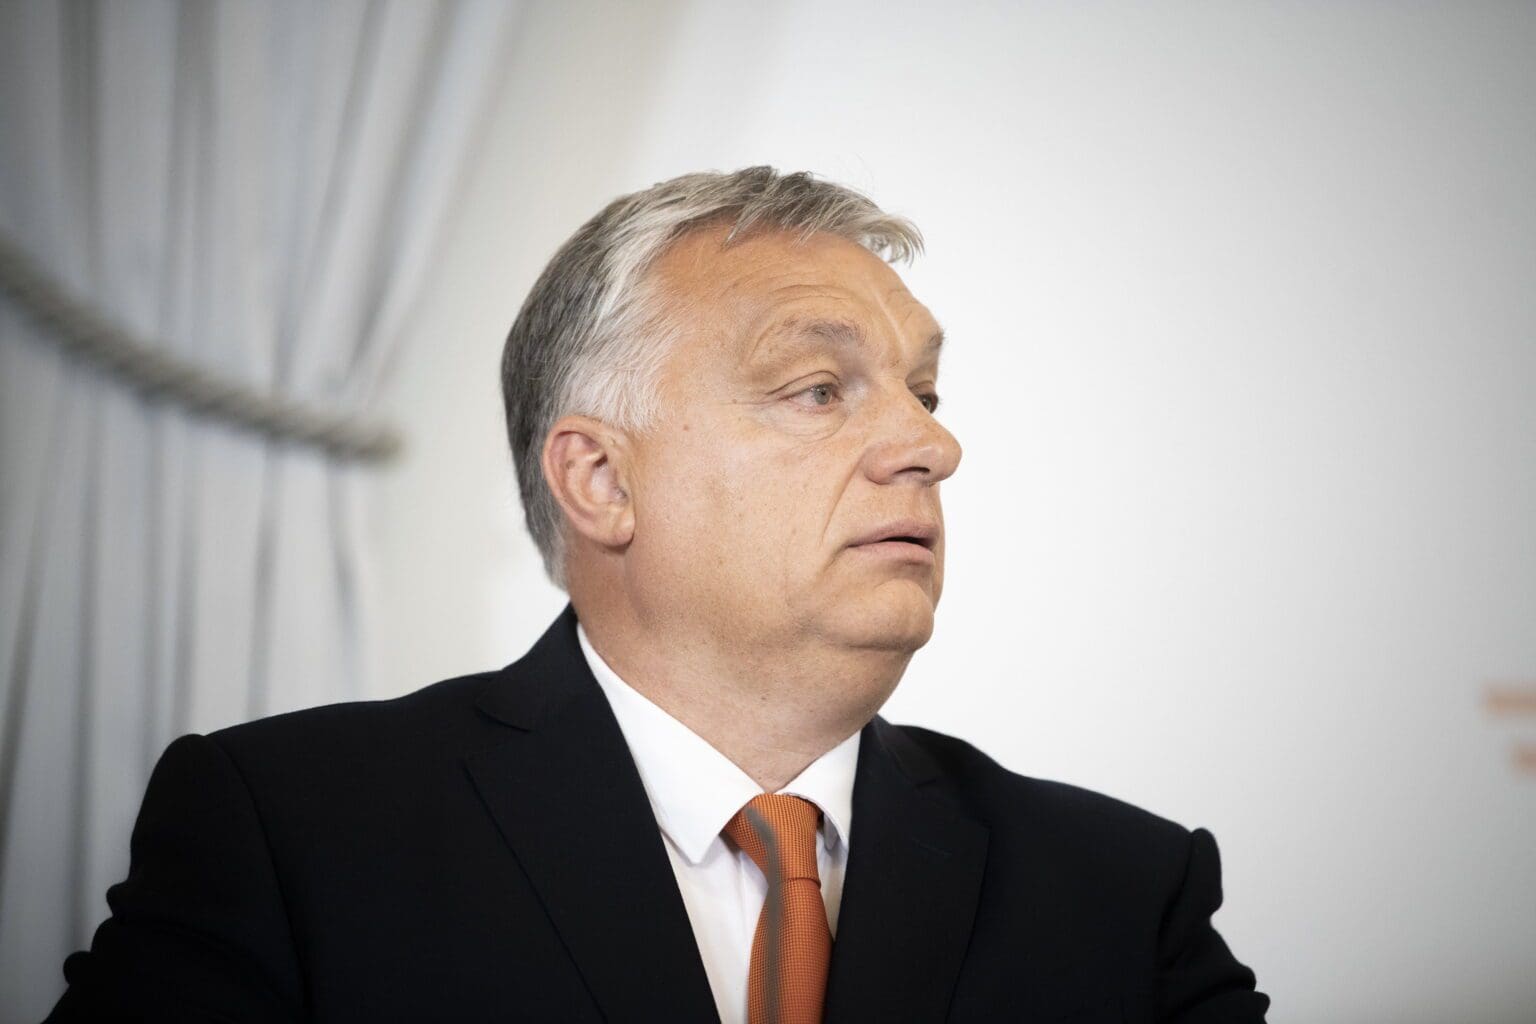 Viktor Orbán: Slovakia is an Important Ally and Strategic Partner